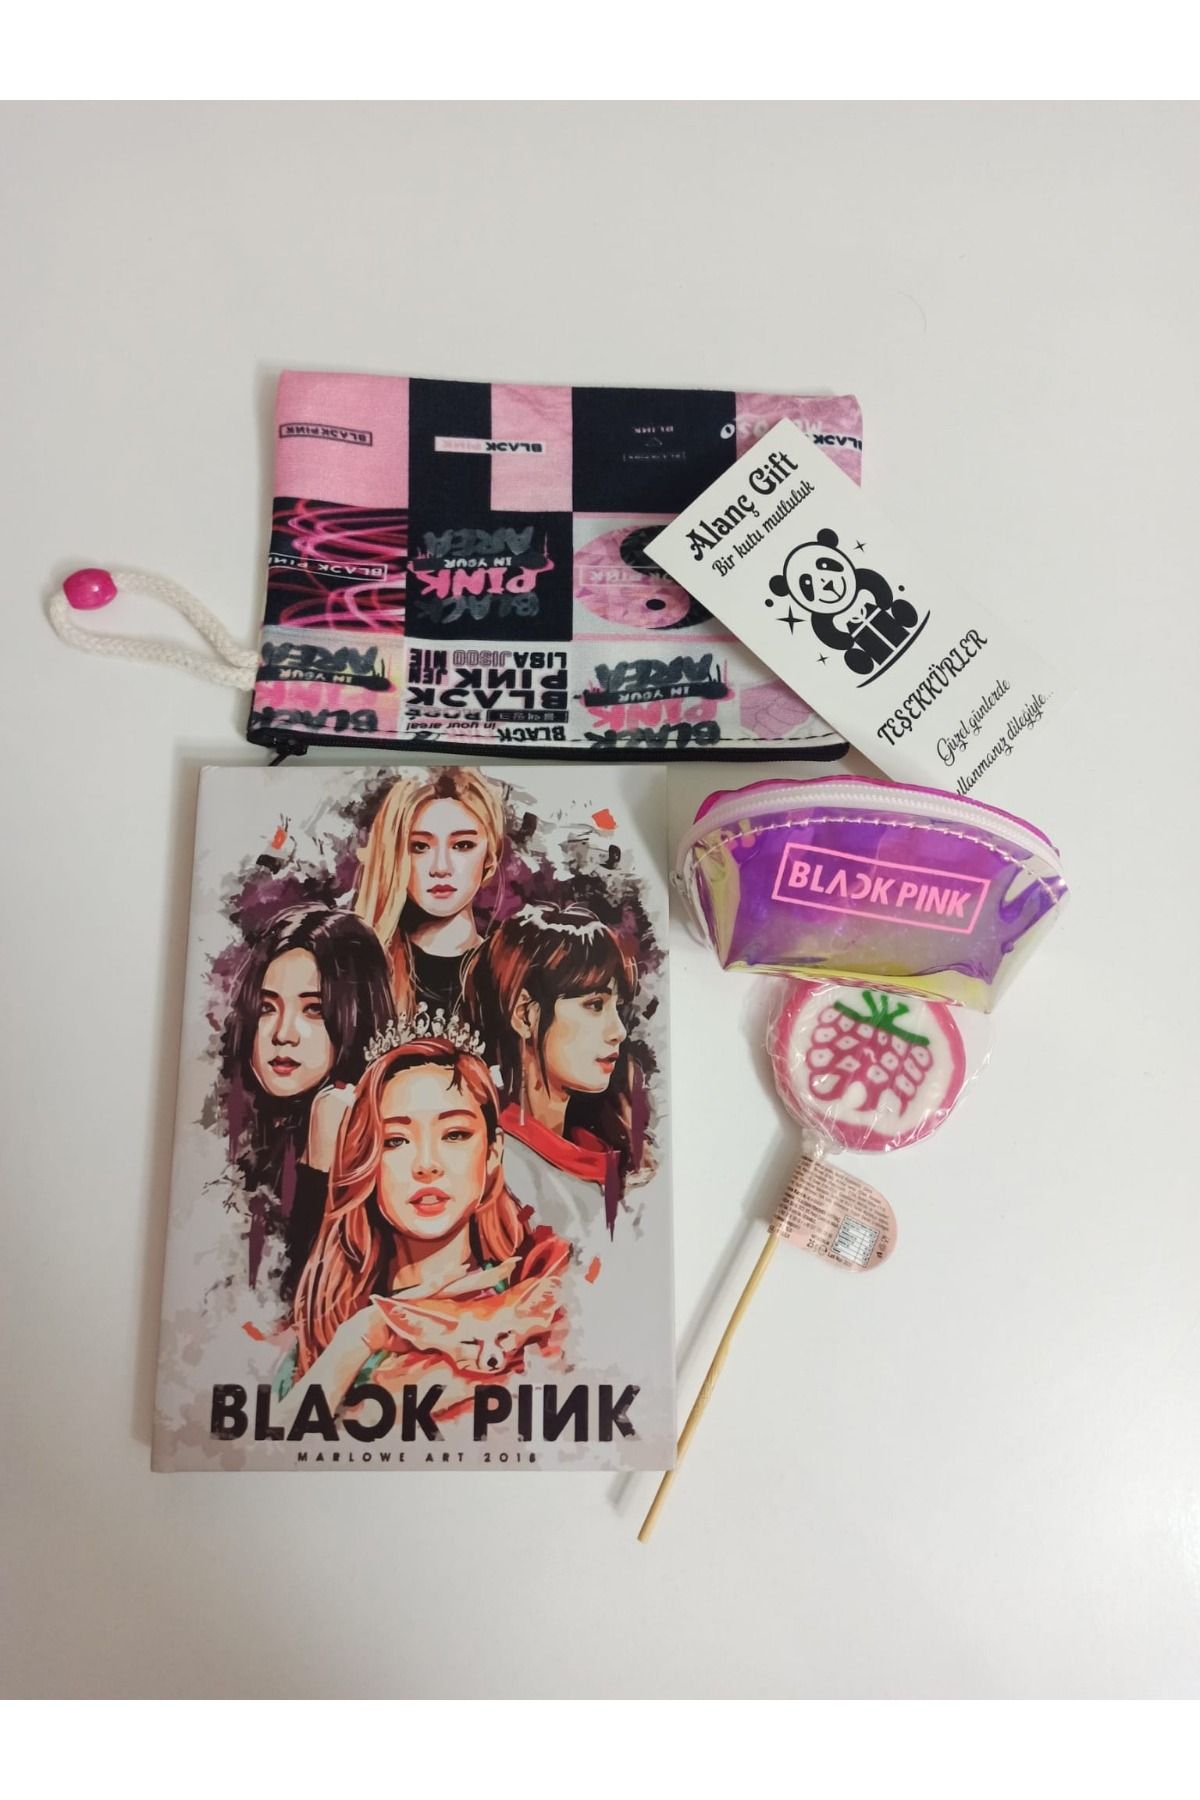 Alanç Gift Black Pink Baskılı Mini Cüzdan, Defter, Bez Kalemlik, Şeker Özel Hediye Seti